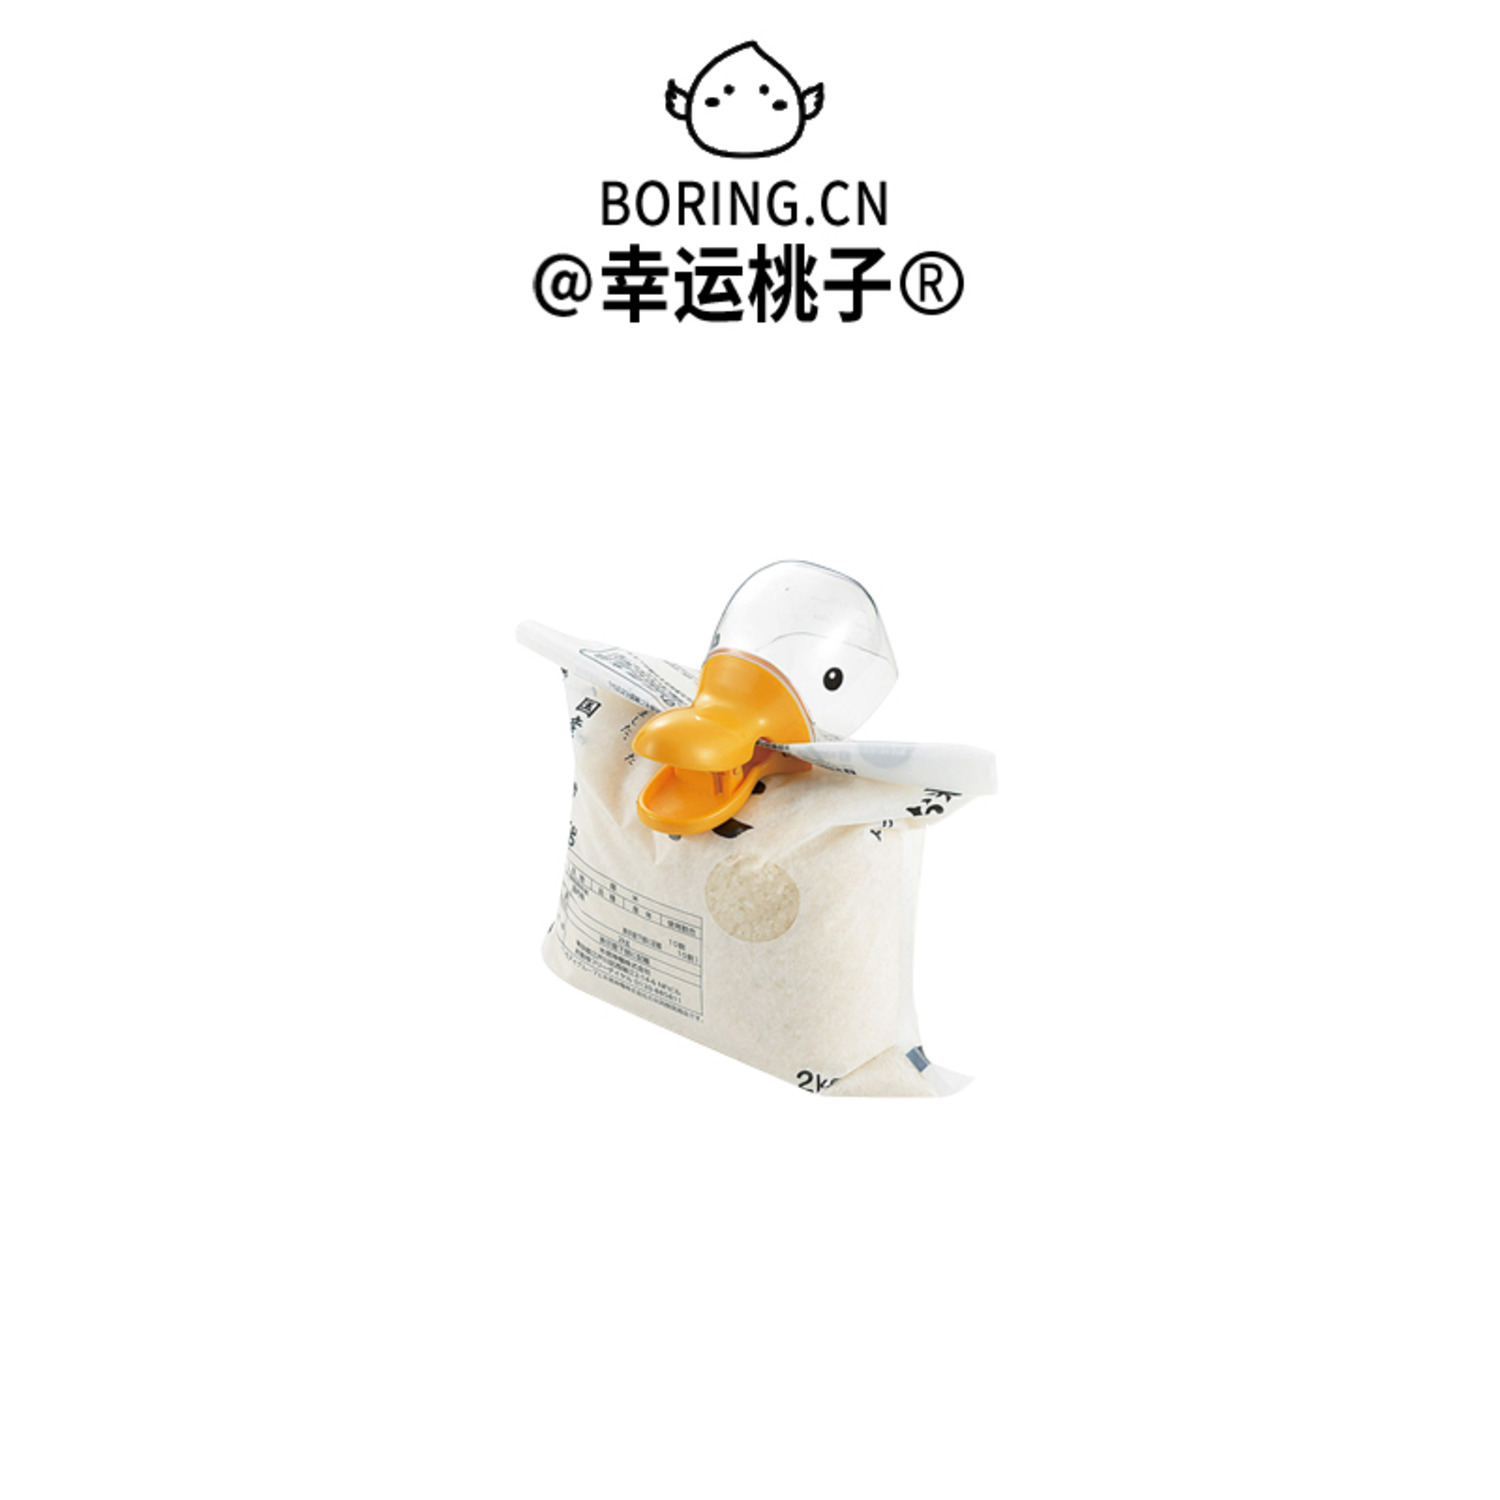 多功能鸭头造型塑料米铲封口夹厨房用品家用可爱卡通迷你水勺水瓢